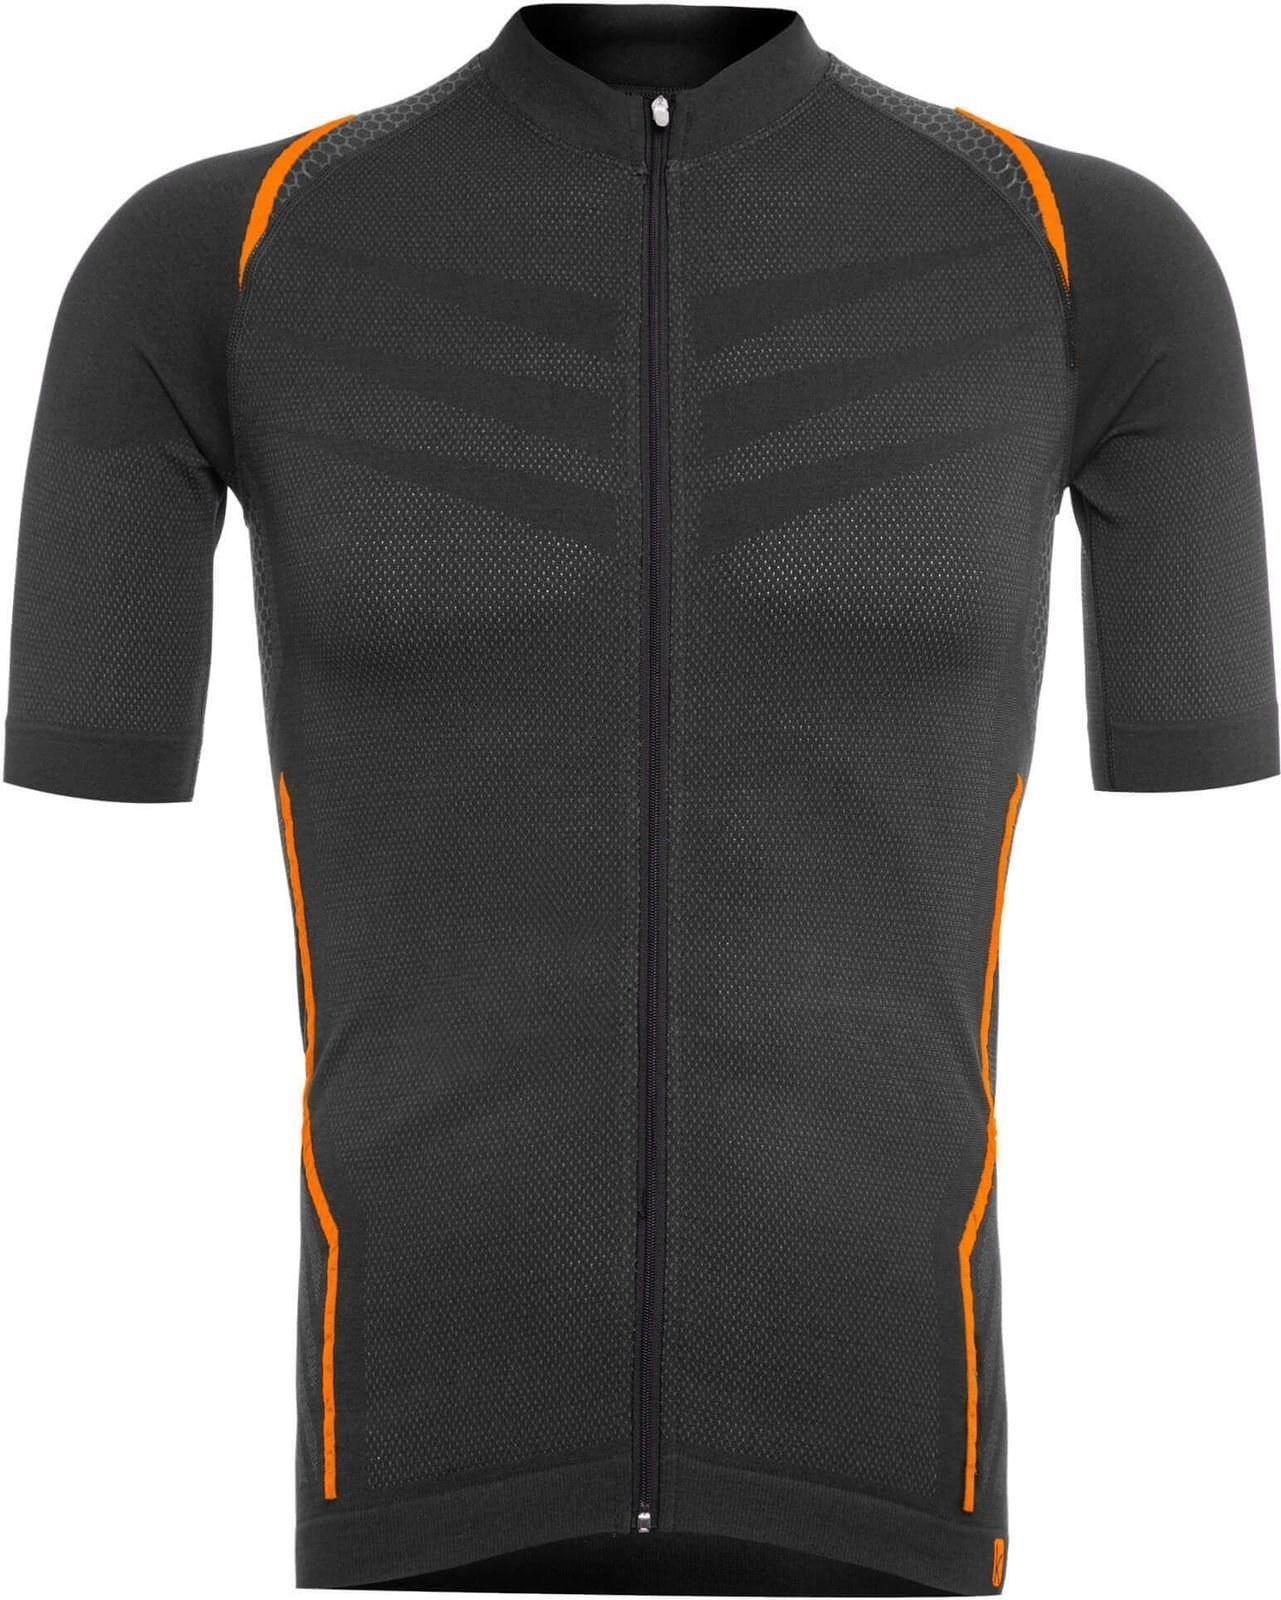 Camisola de ciclismo Funkier Respirare Jersey Grey/Orange XL/2XL